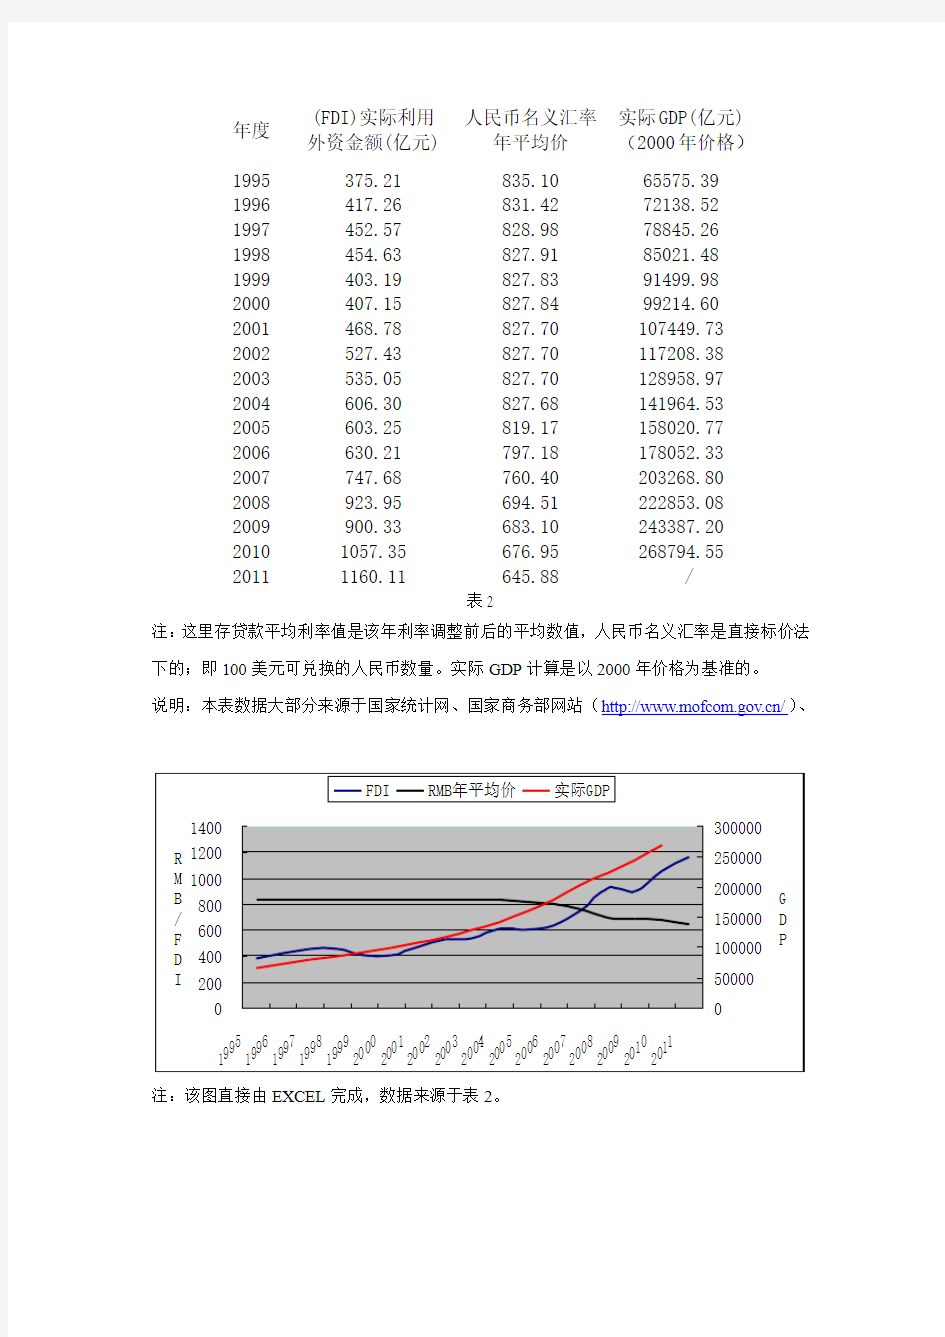 1995-2011年我国外商直接投资FDI、人民币汇率、实际GDP数据